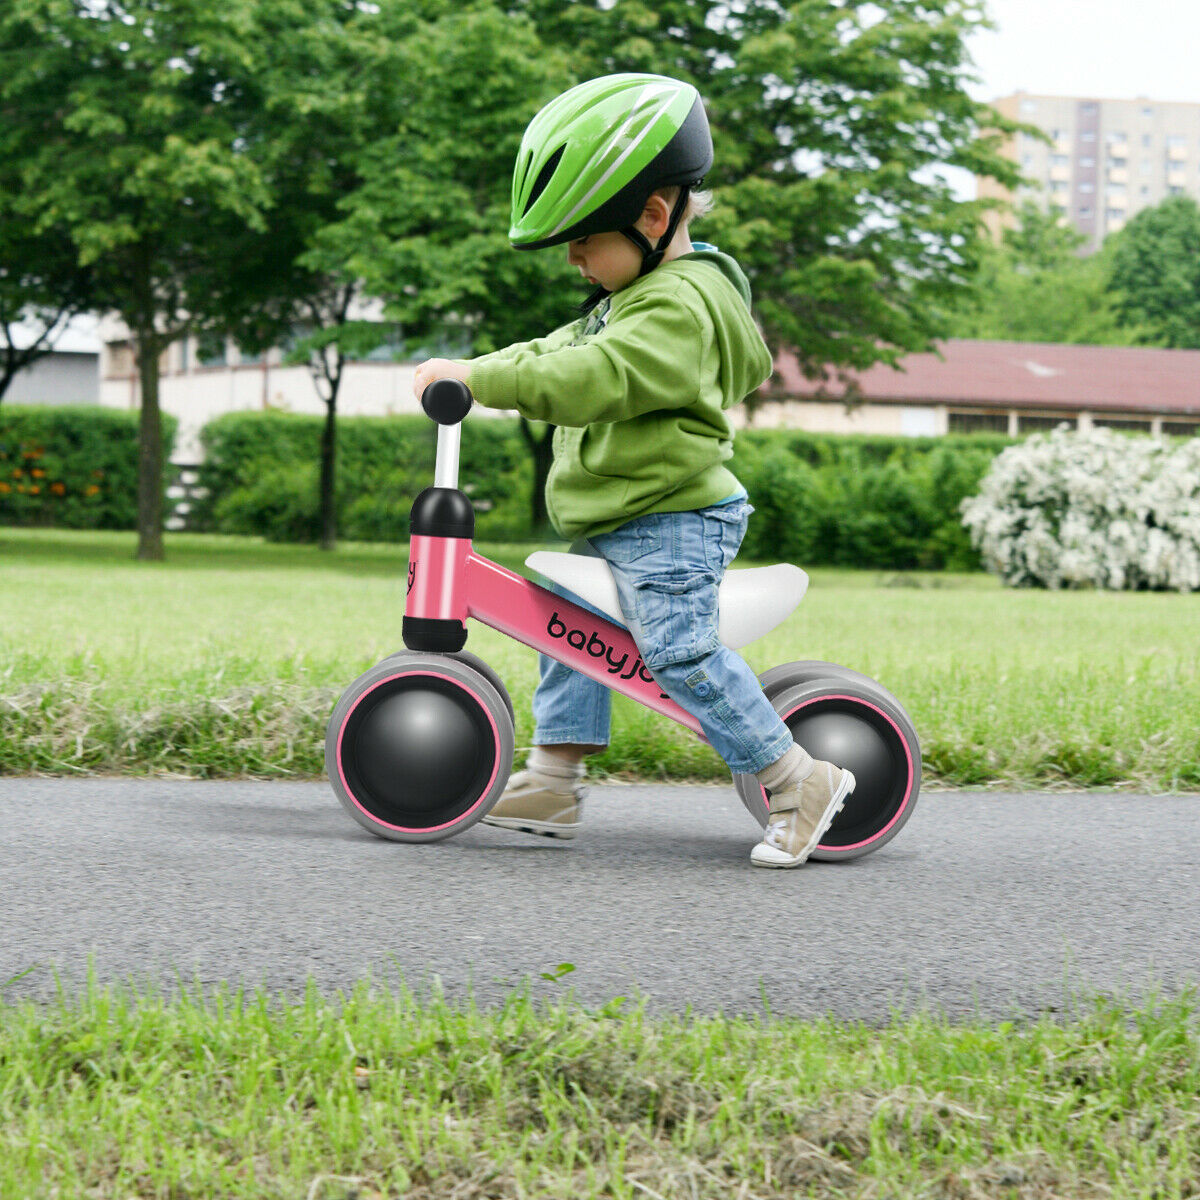 Babyjoy 4 Wheels Baby Balance Bike Children Walker No-Pedal Toddler Toys Rides Pink - image 4 of 10